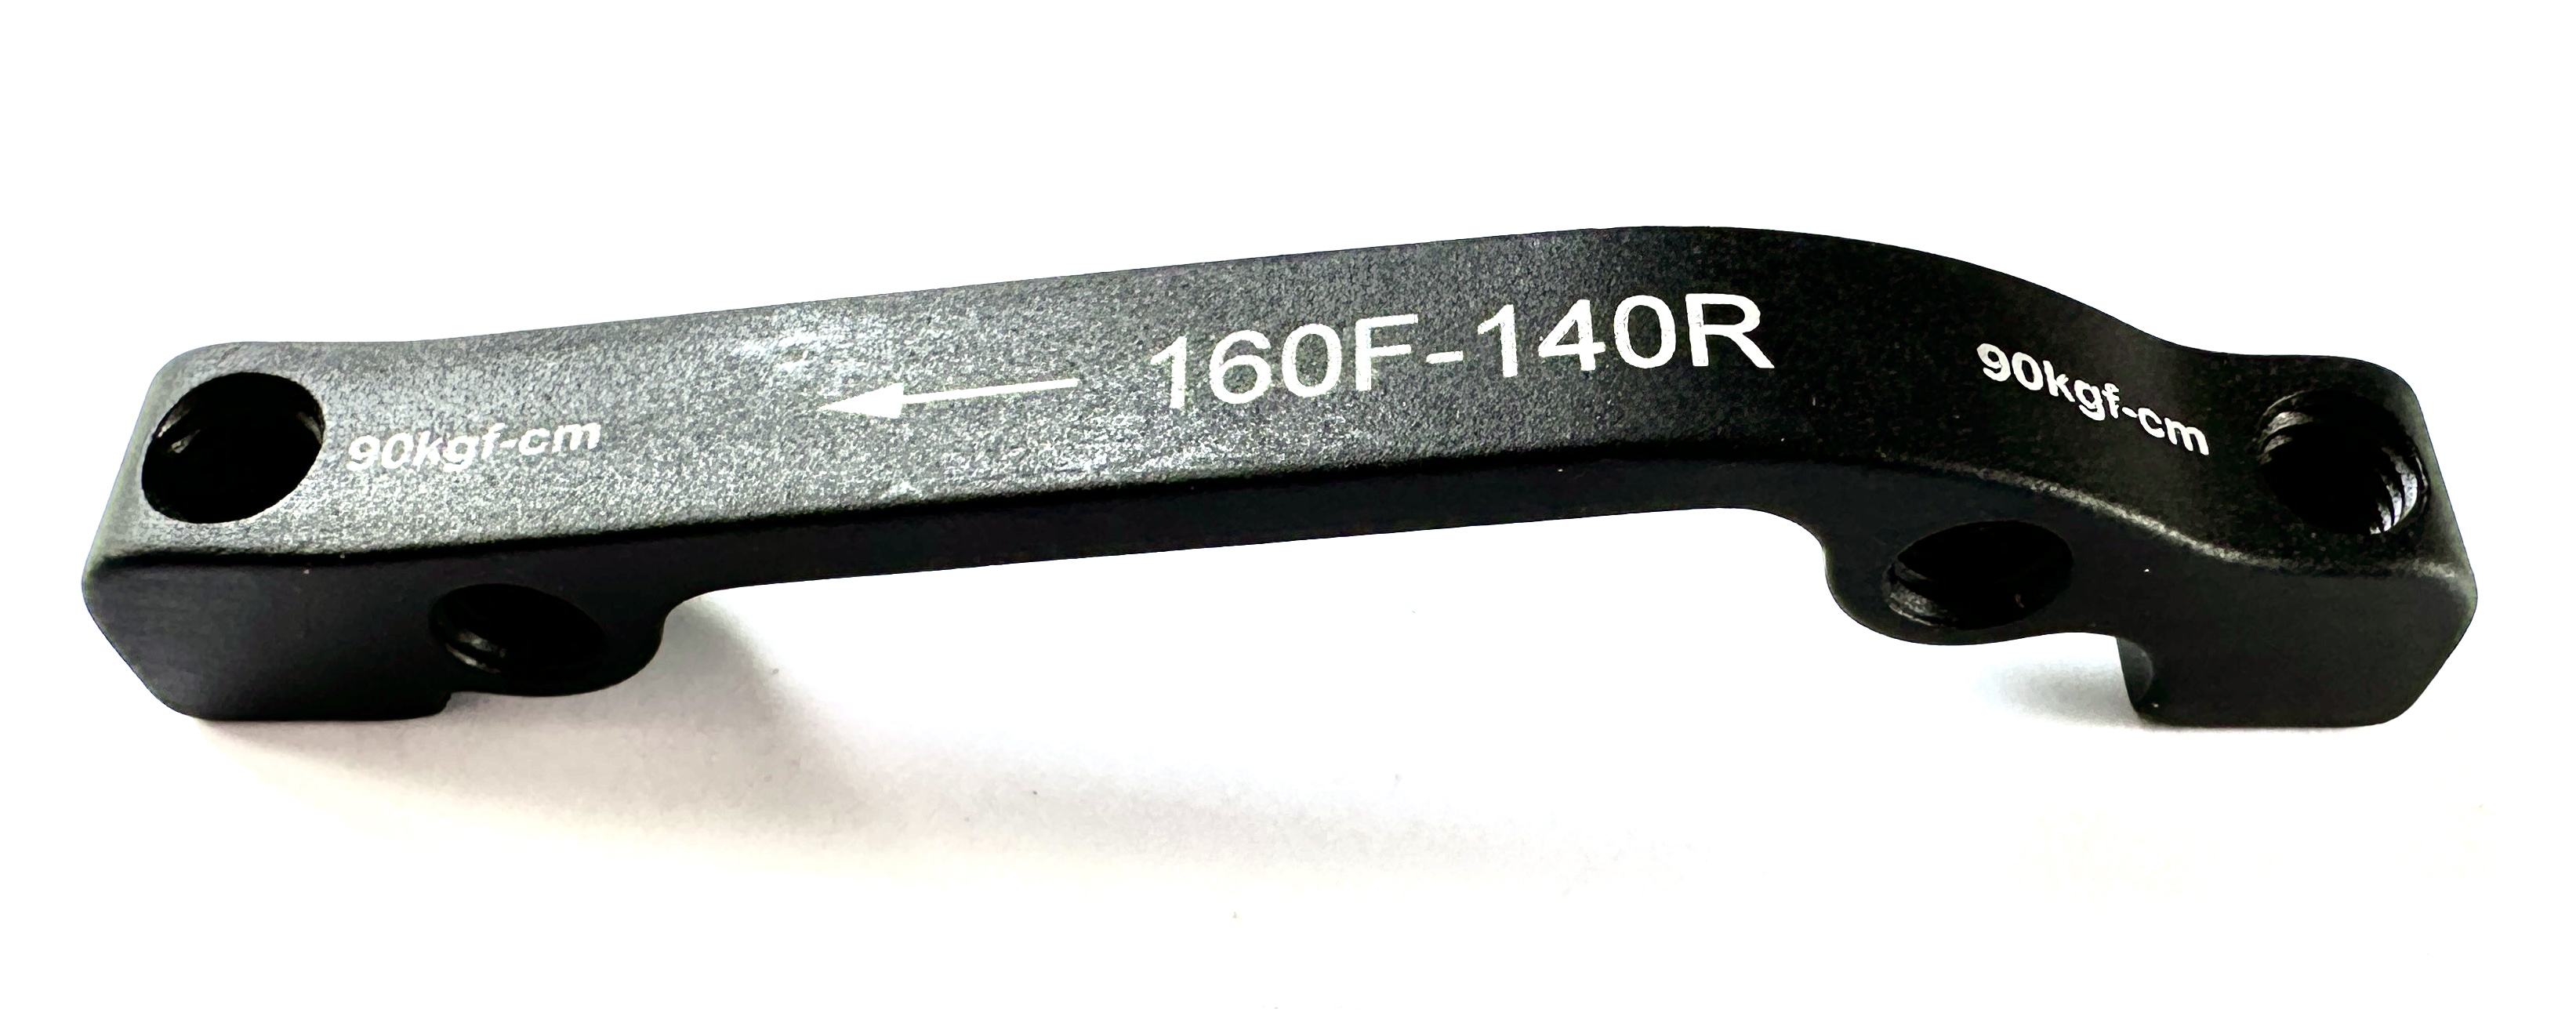 Adaptateur pour freins à disque IS-PM 160F-140R